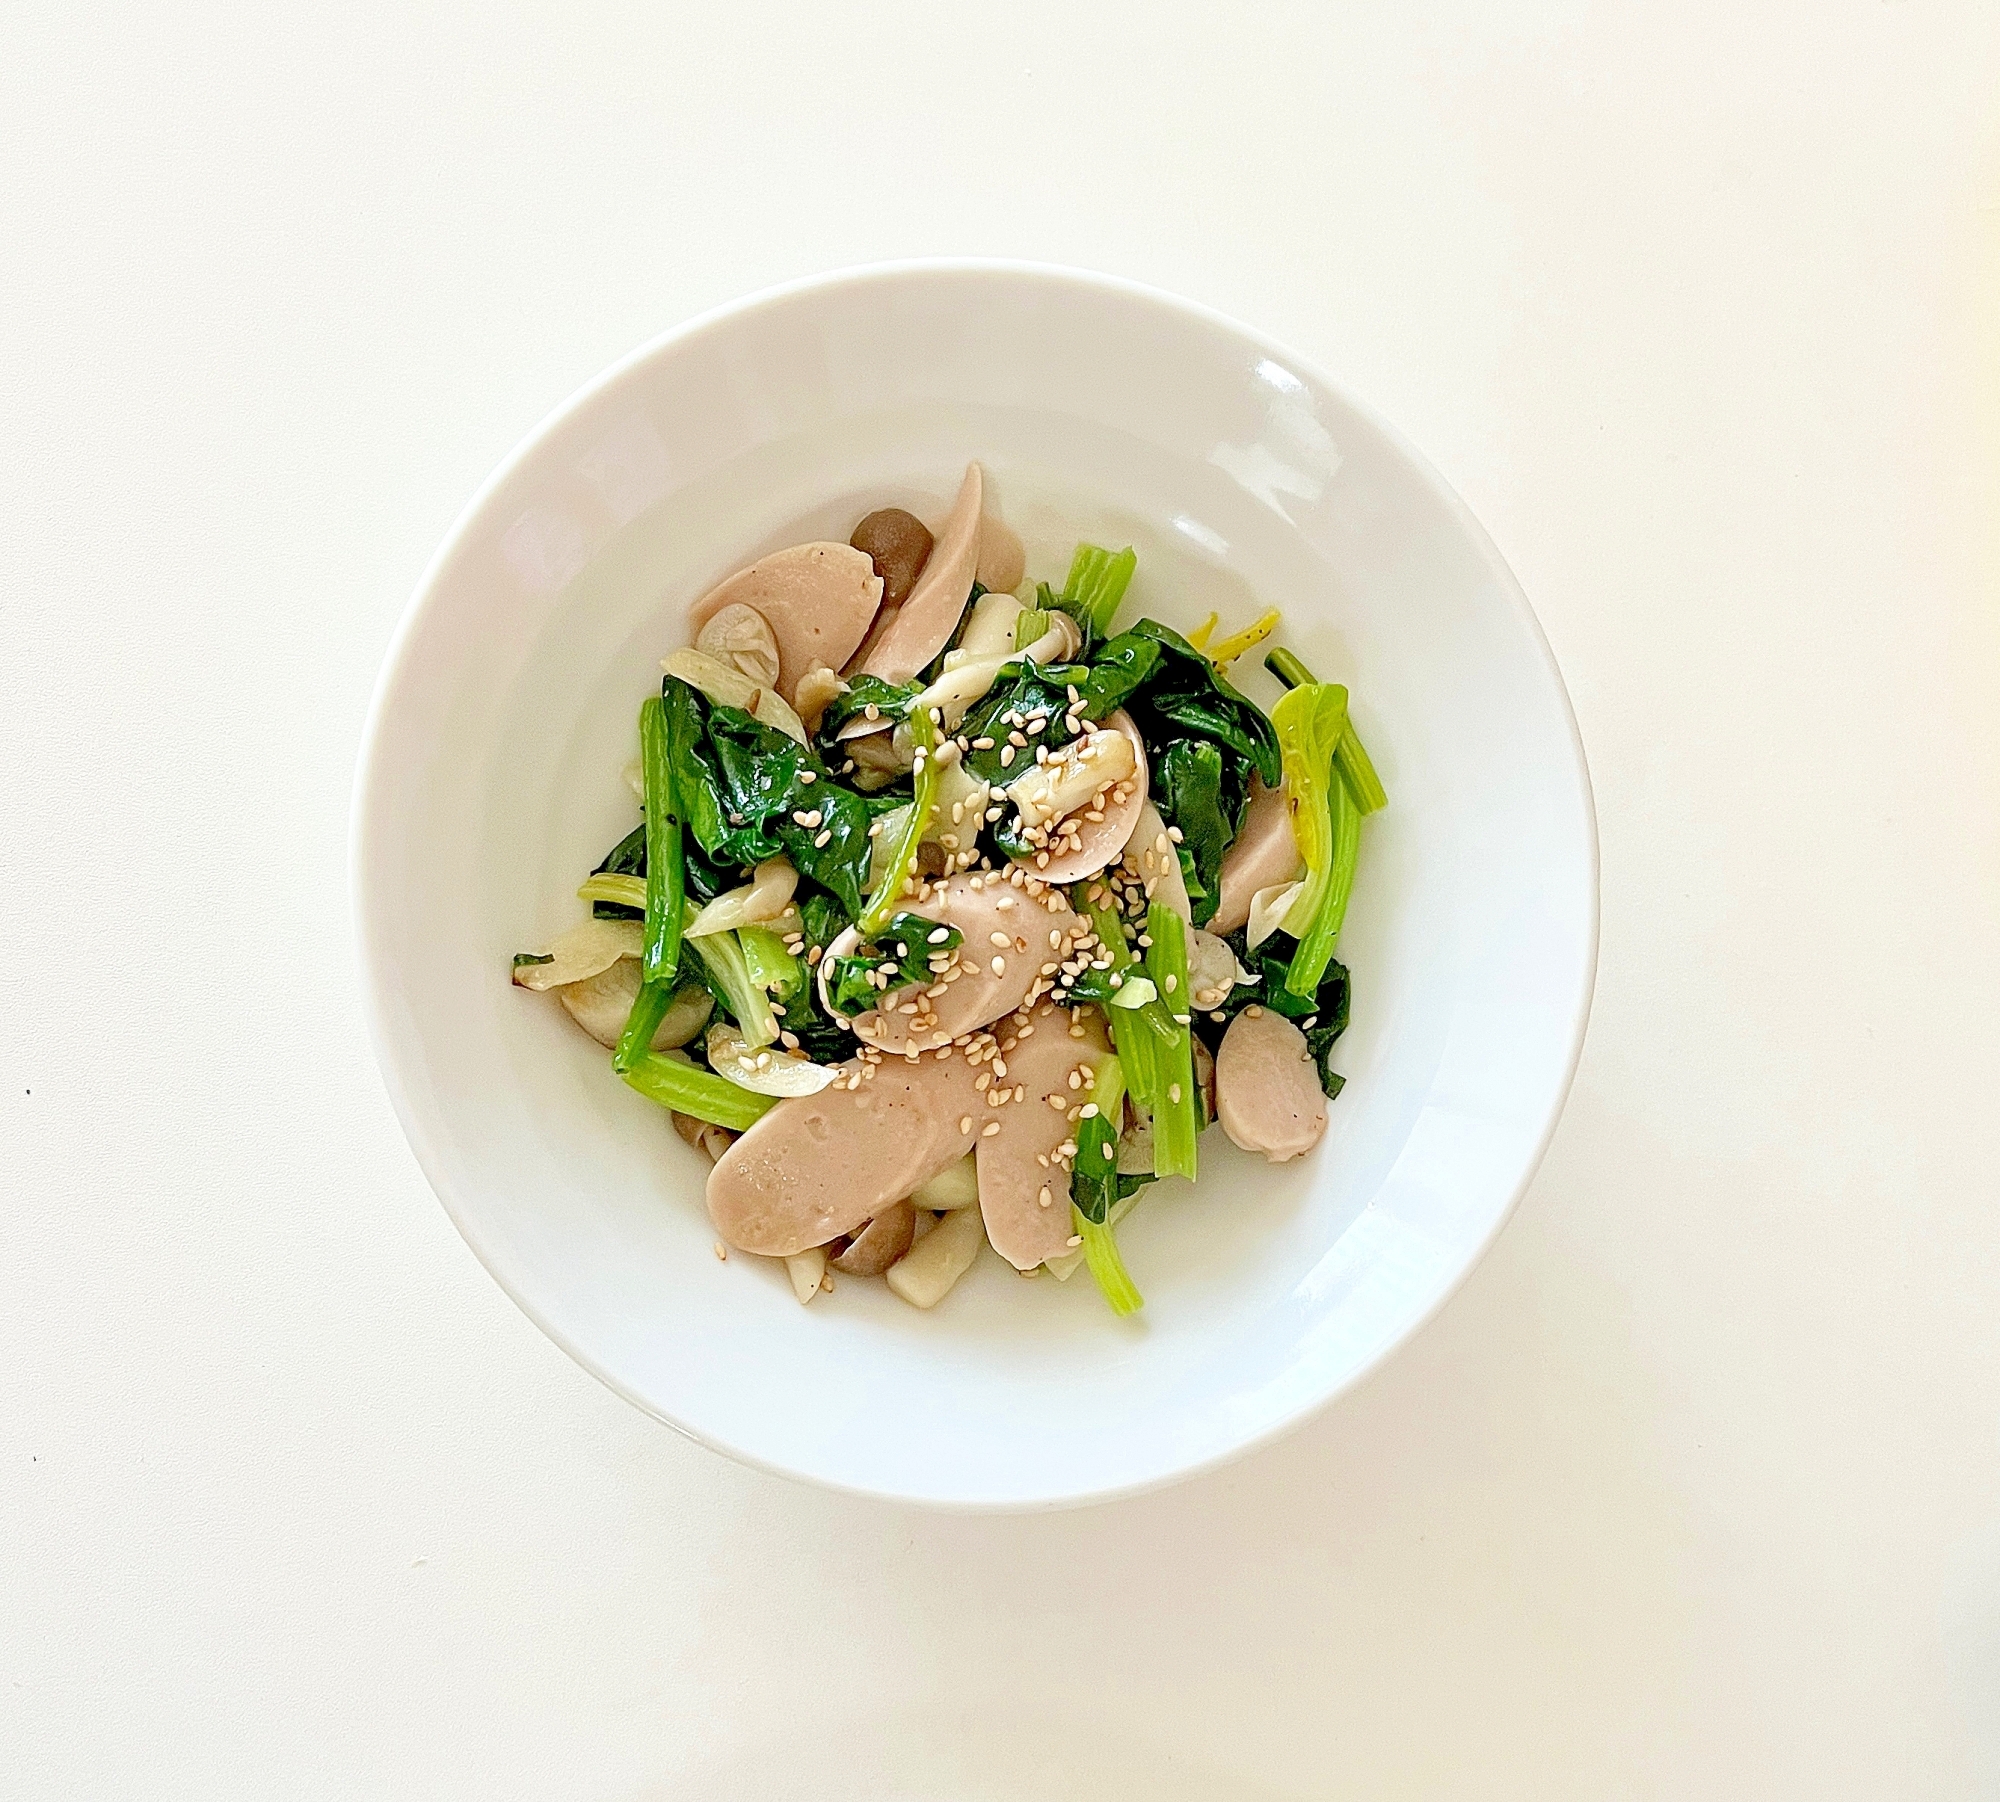 小松菜と魚肉ソーセージの胡麻炒め